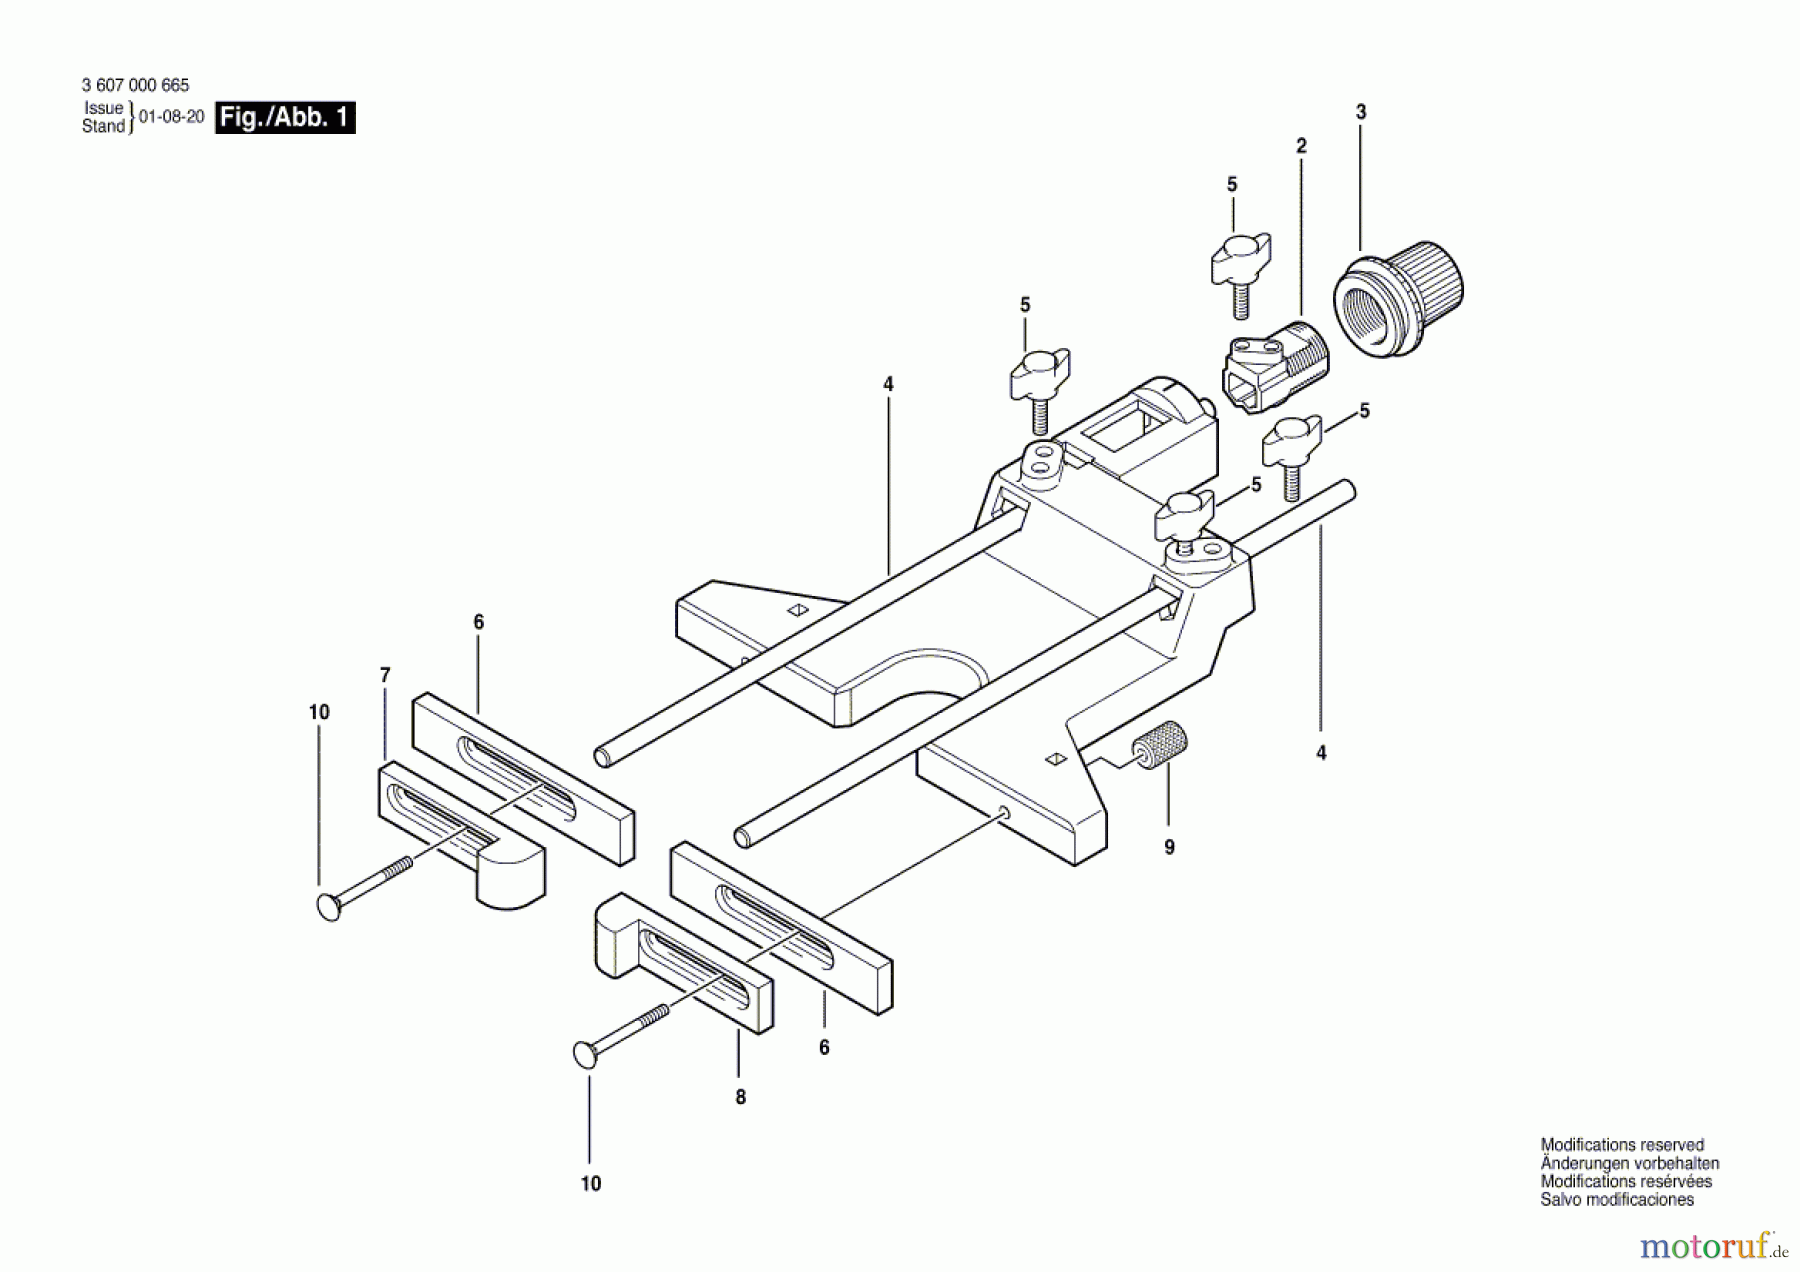  Bosch Werkzeug Parallelanschlag ---- Seite 1